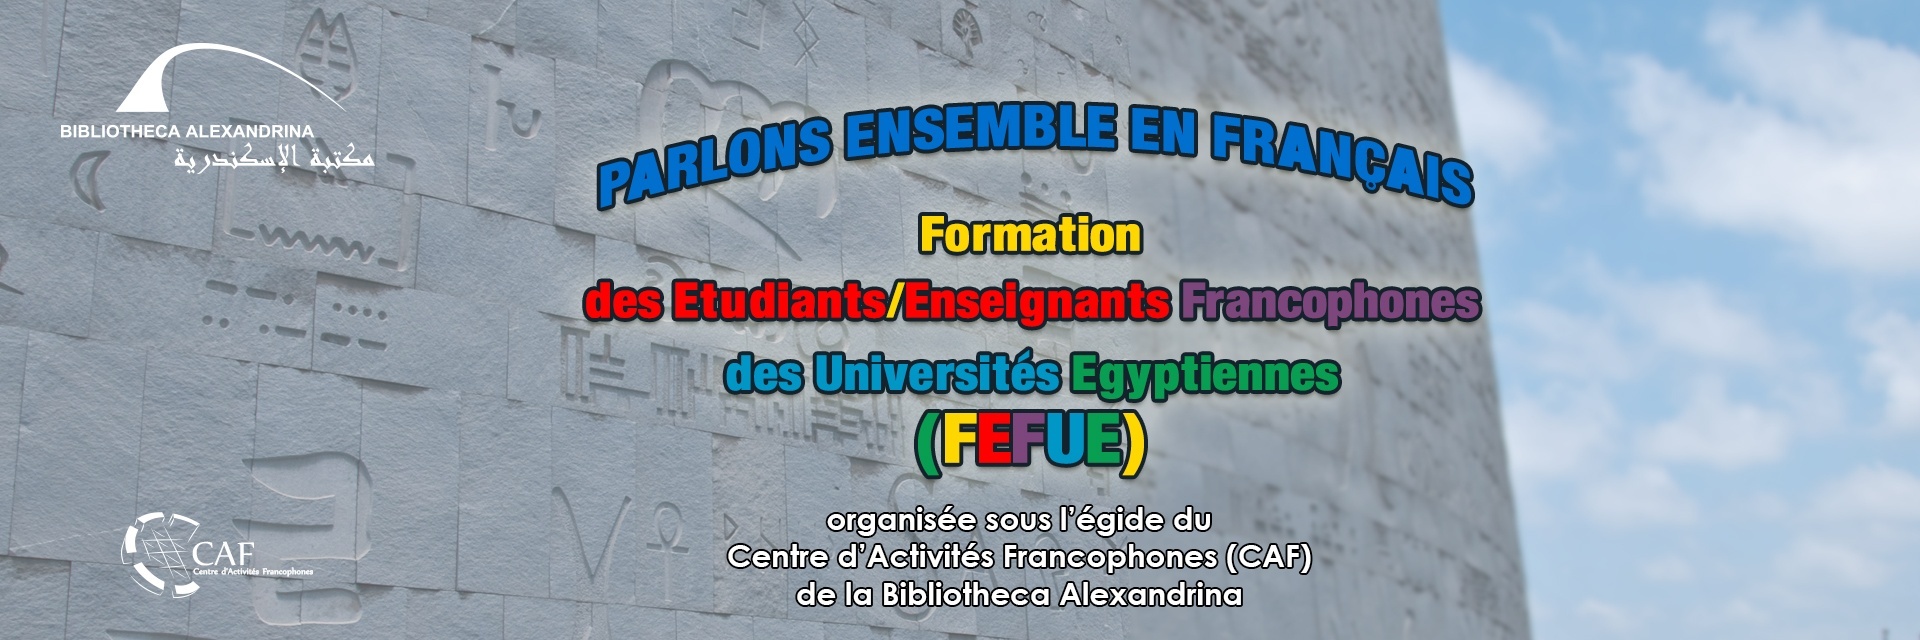  Formation des Etudiants Francophones des Universités Egyptiennes (FEFUE) – 22e édition 